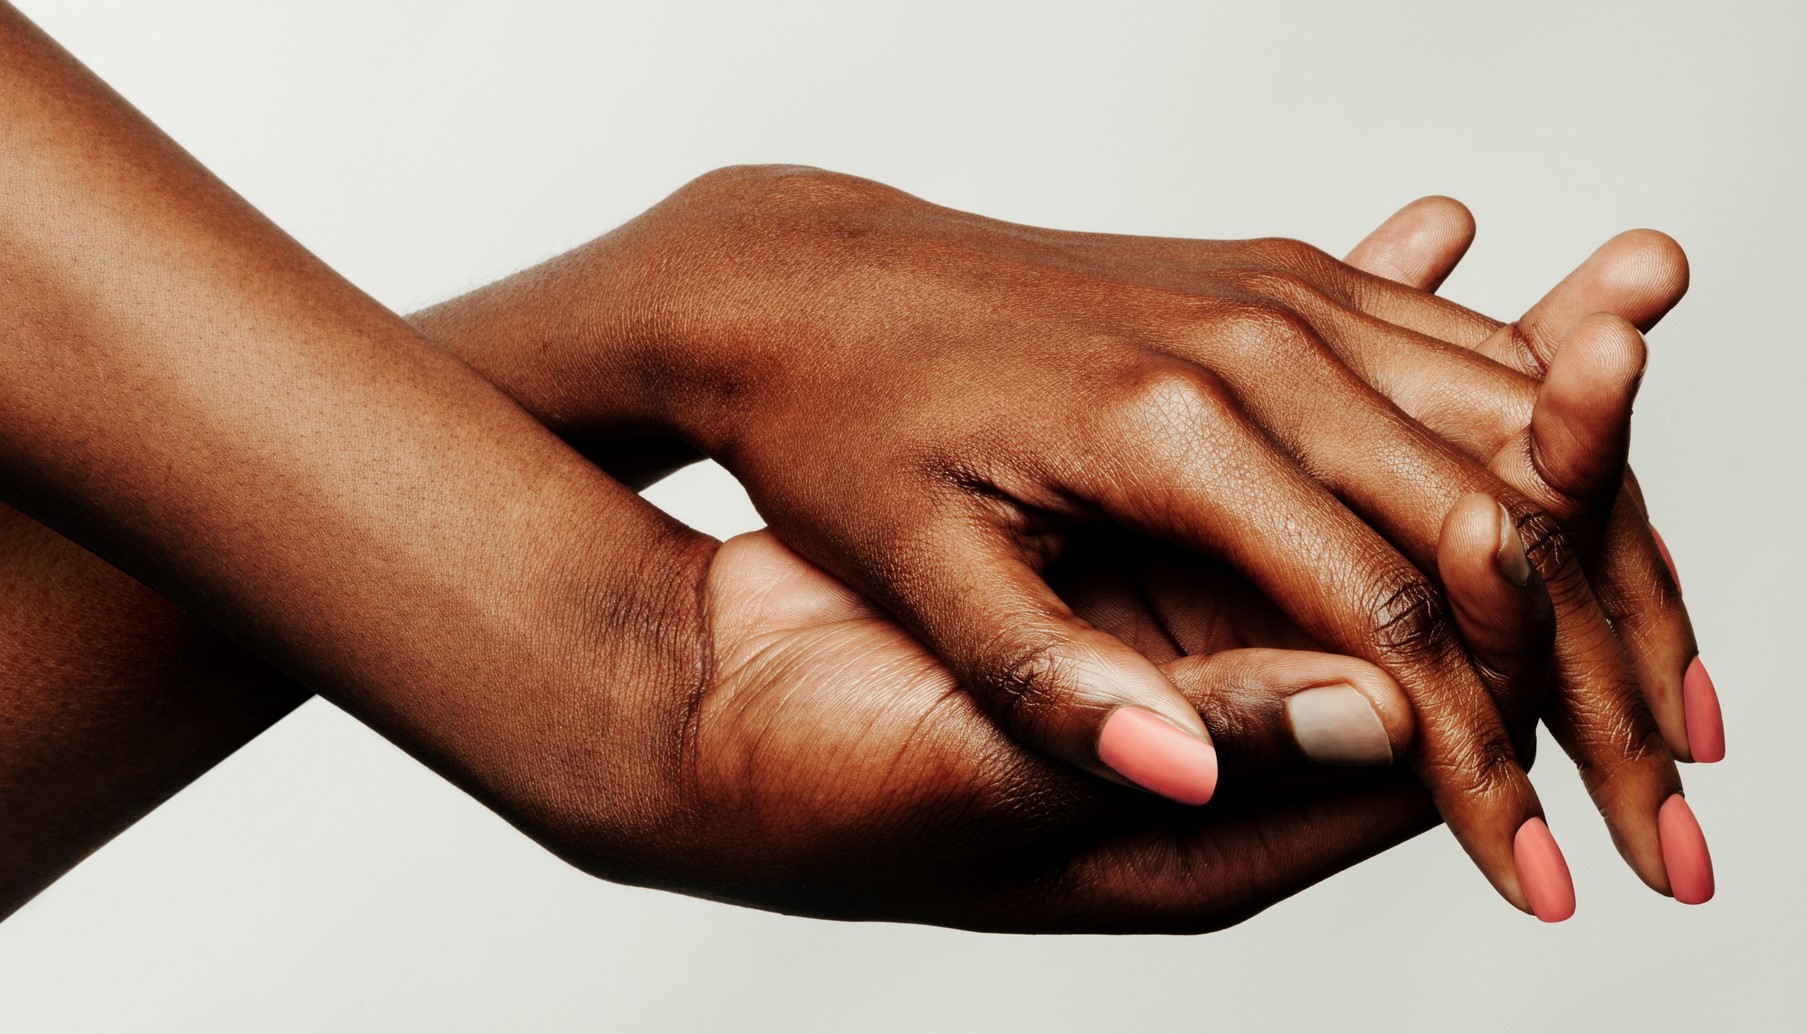 Passar hidratante e protetor solar nas mãos retarda o envelhecimento da pele (Foto: Getty Images)